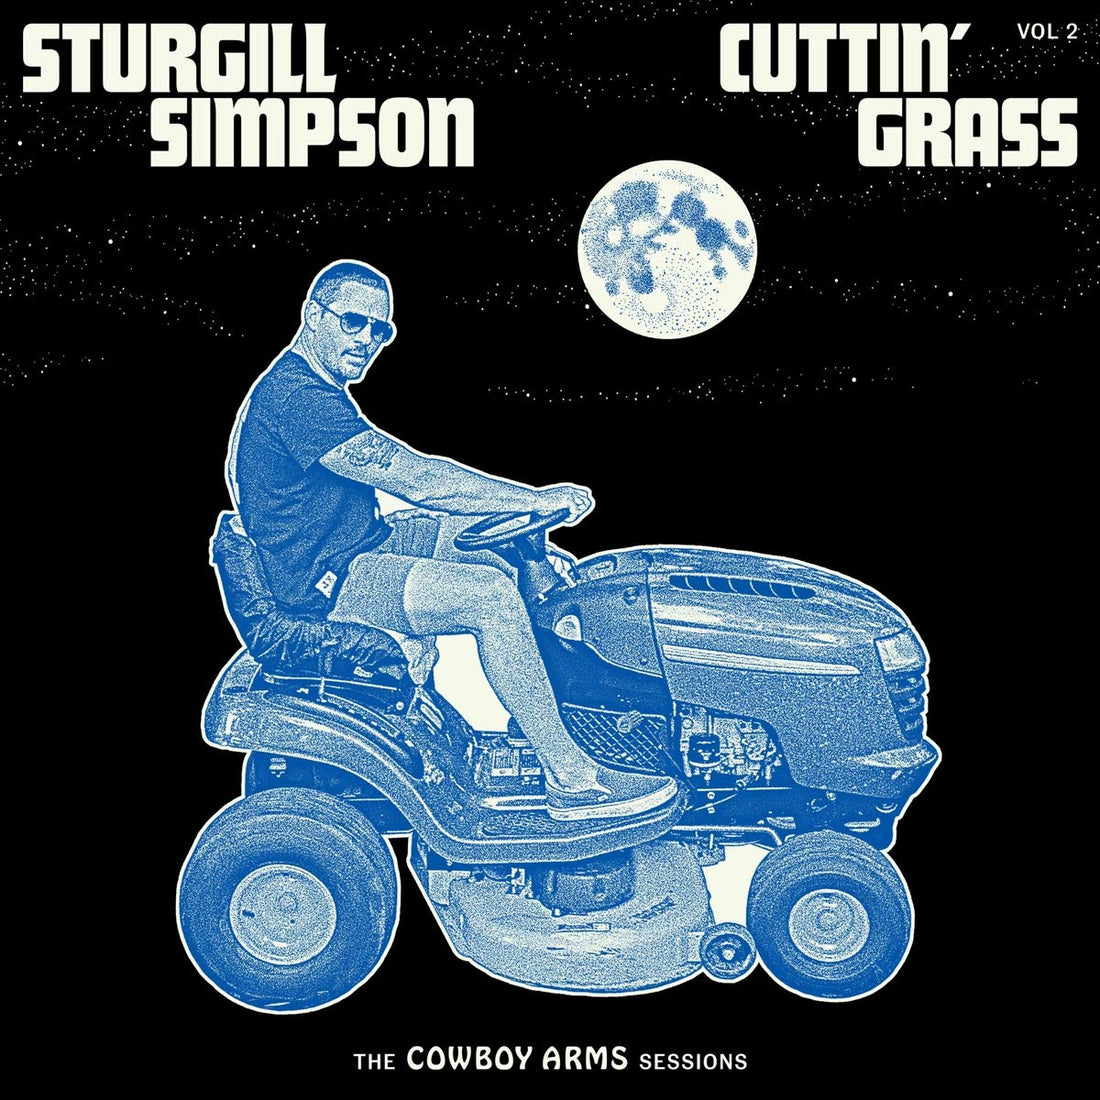 Sturgill Simpson- Cuttin Grass Vol. 2